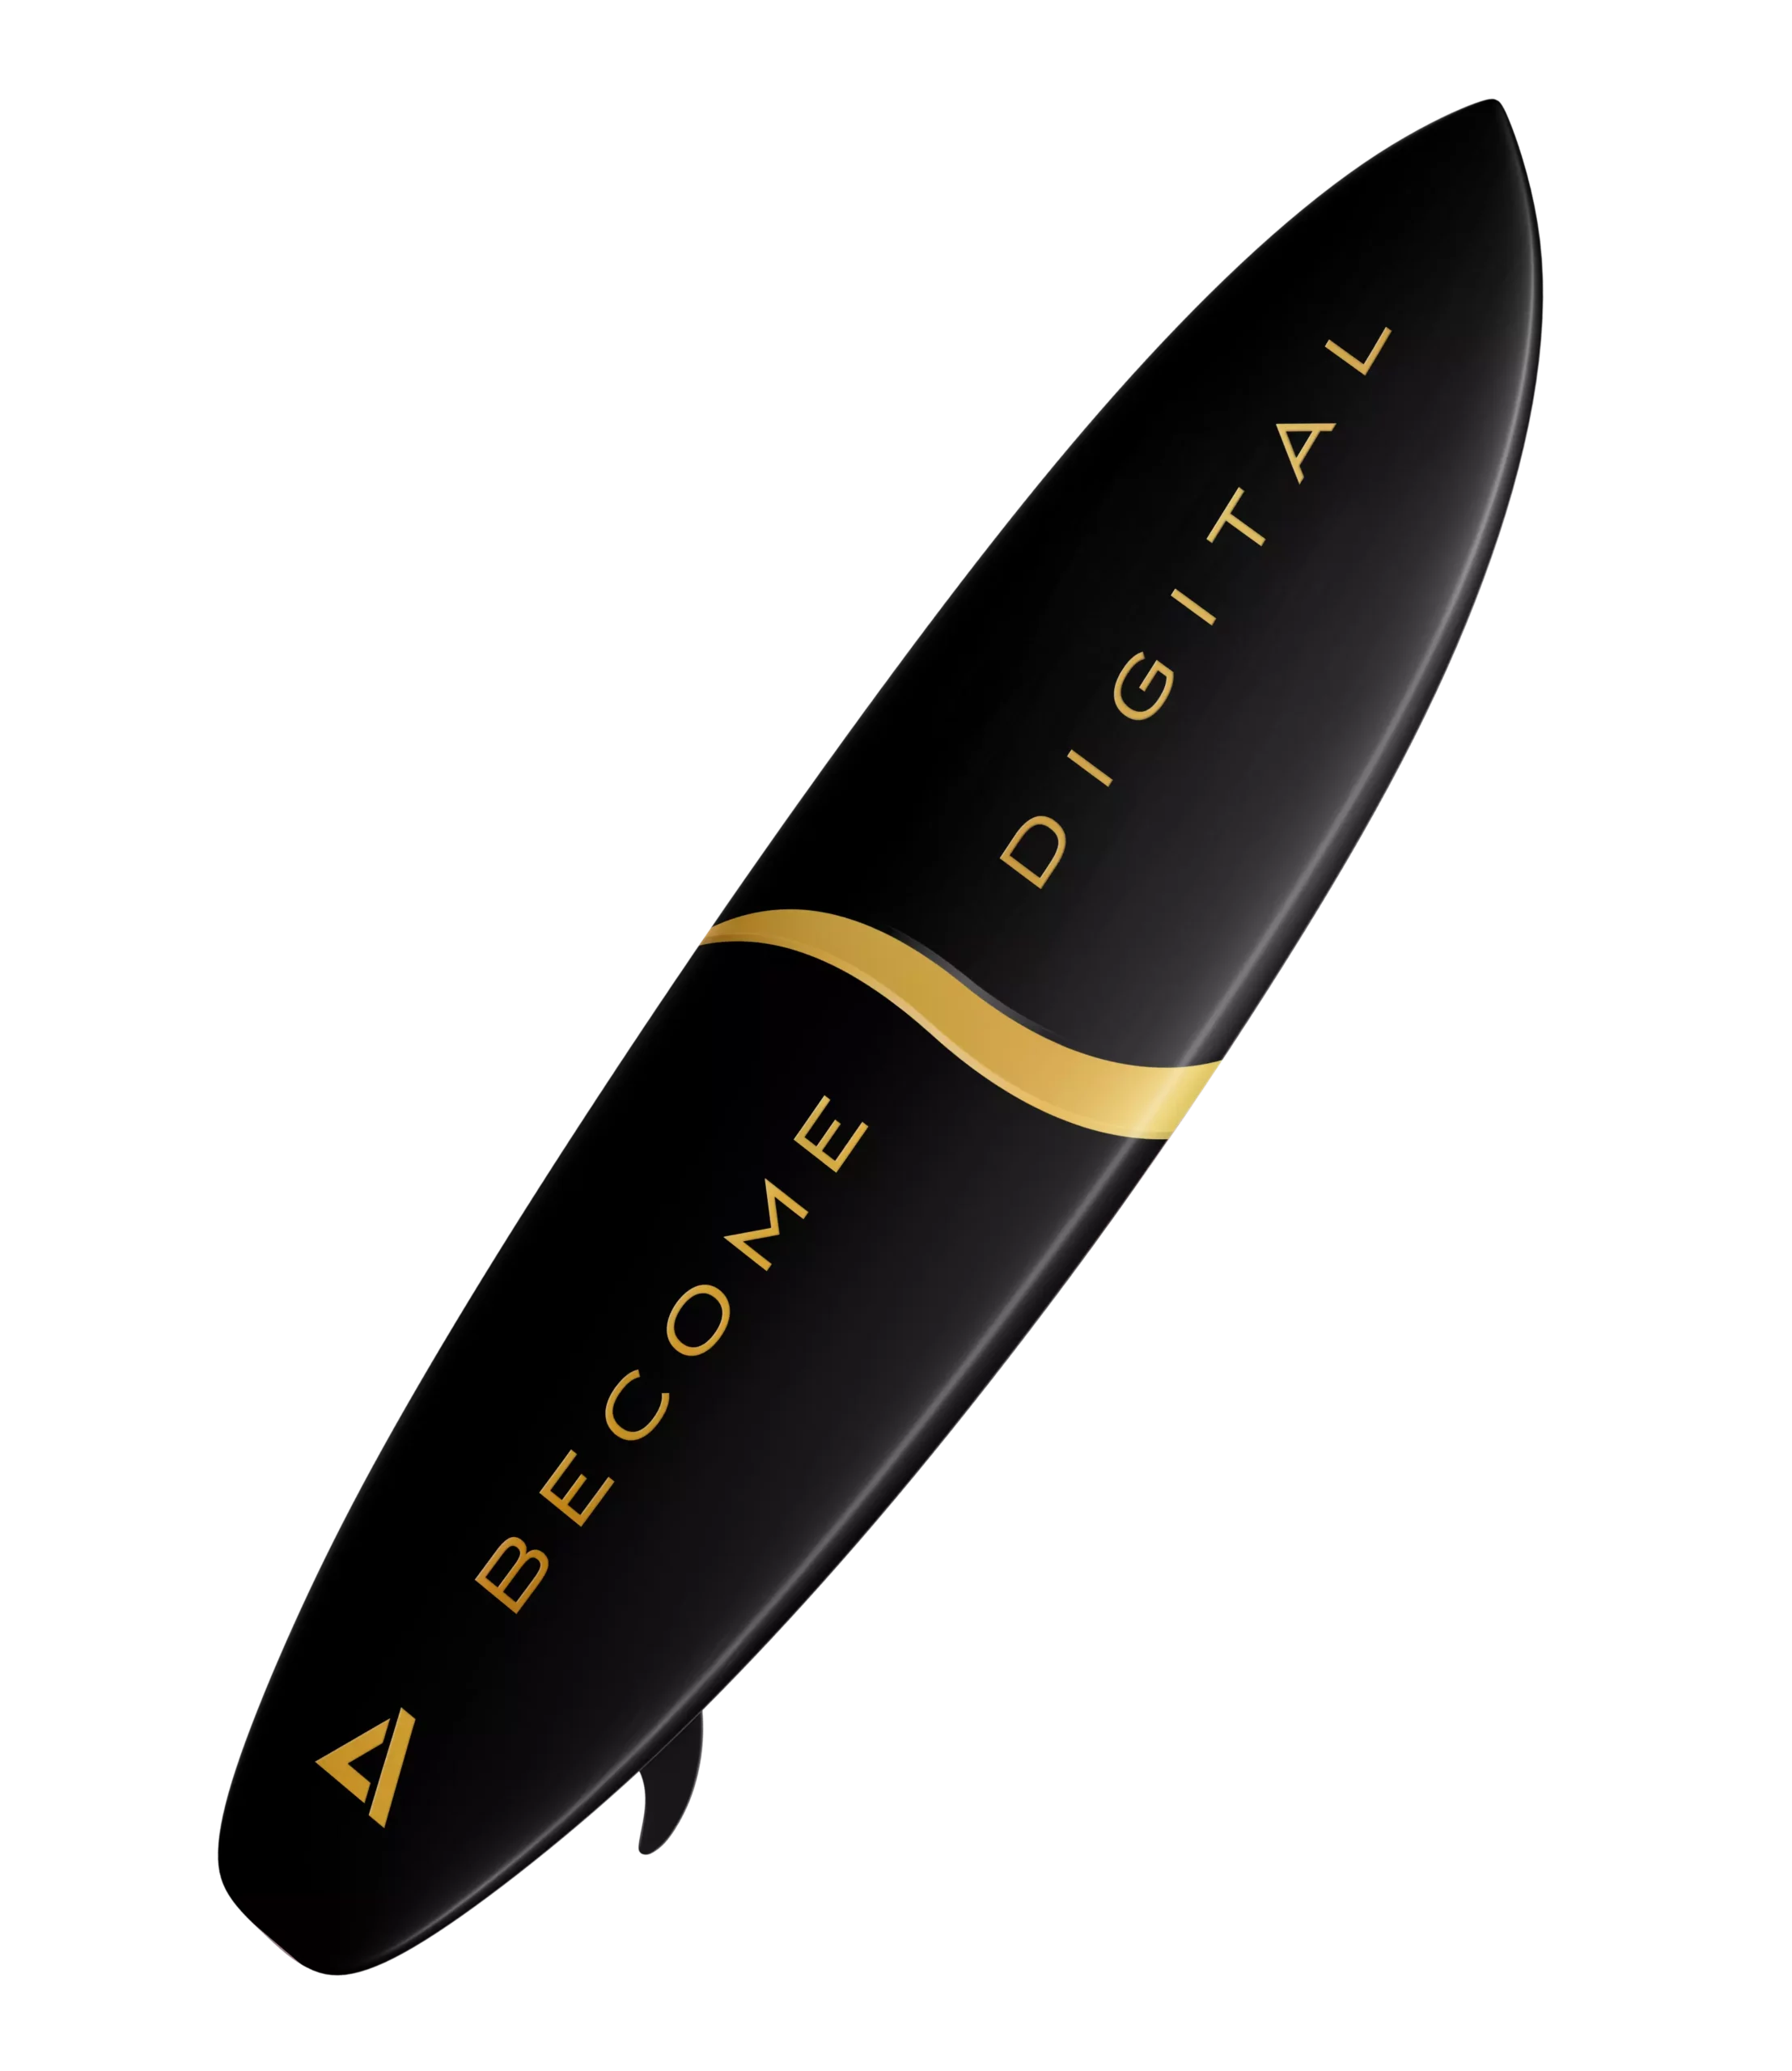 A decorative dark surfboard